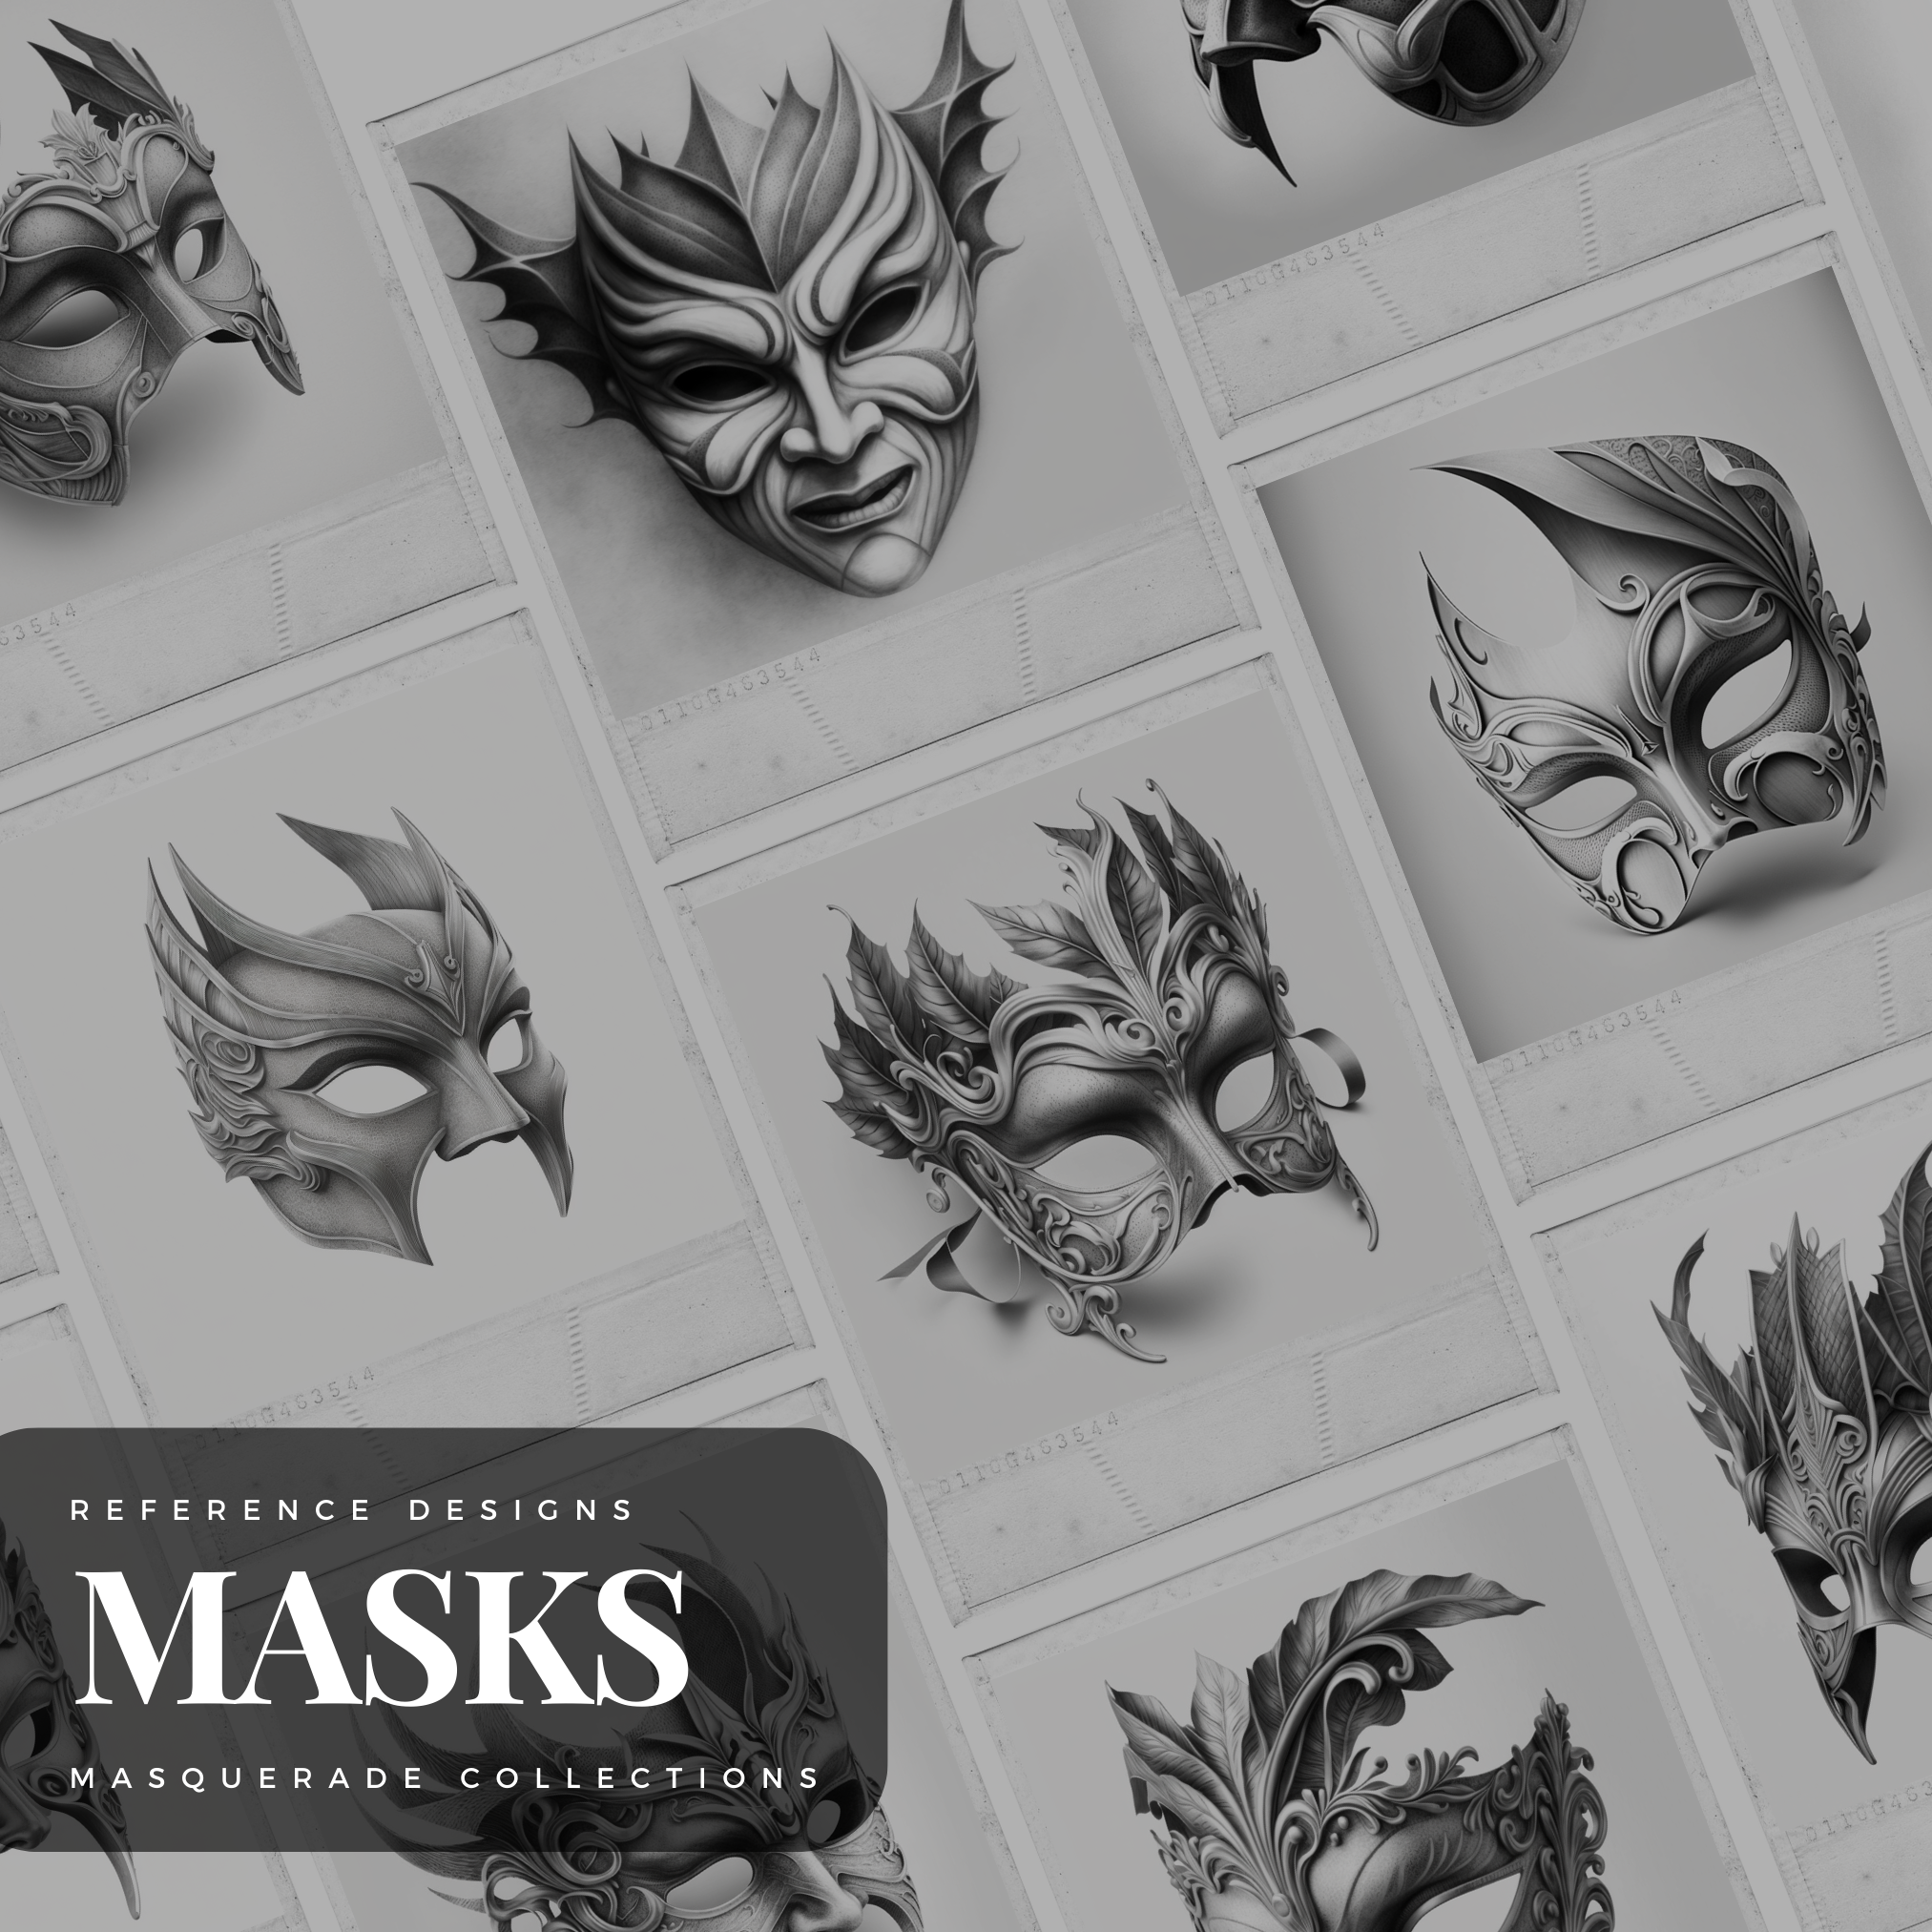 Masquerade Masks Digital Reference Design Collection: 50 Procreate & Sketchbook Images